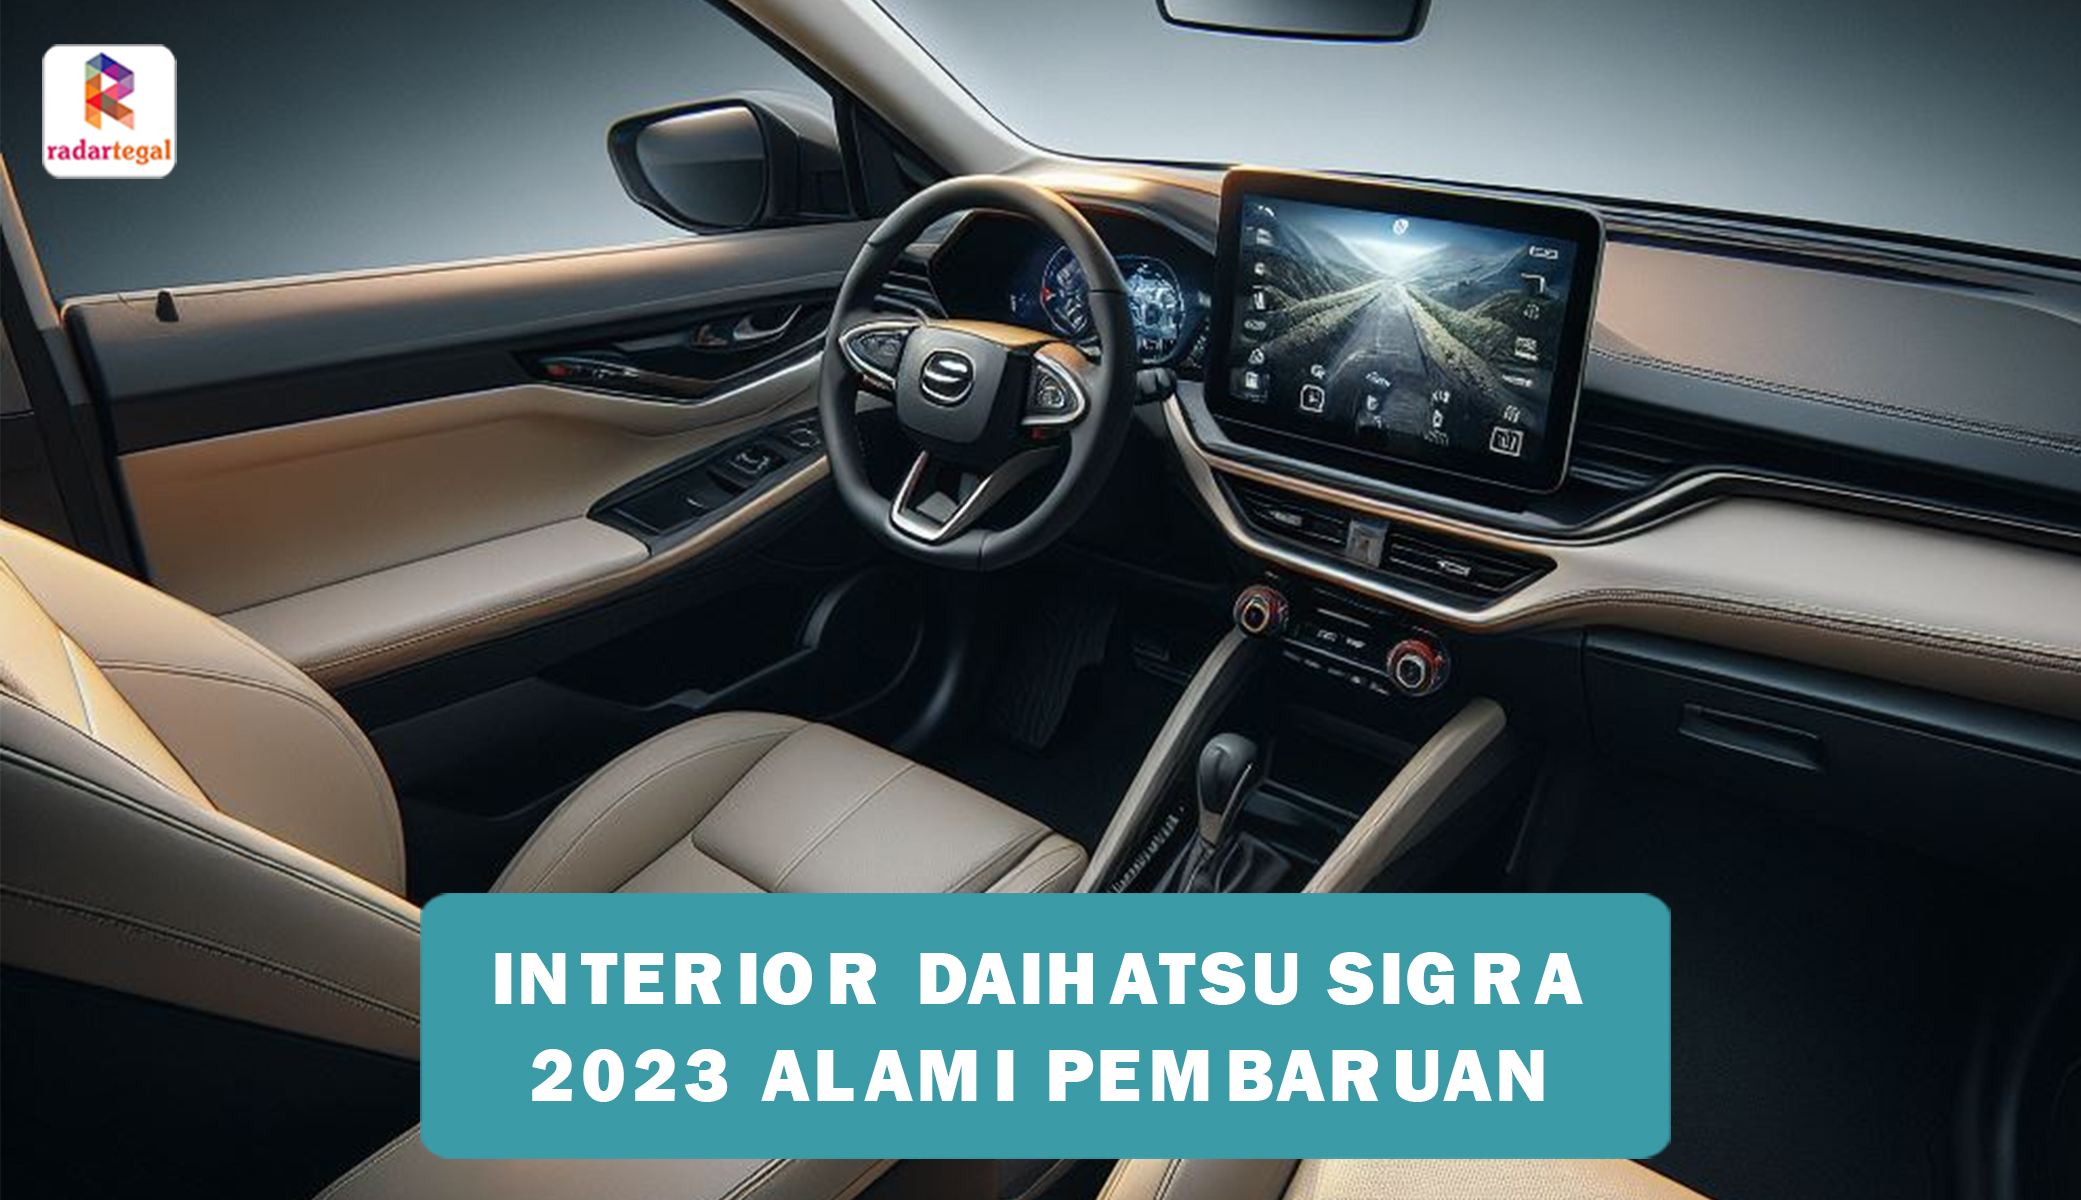 Interior Daihatsu Sigra 2023 Alami Pembaruan, Makin Nyaman untuk Bepergian